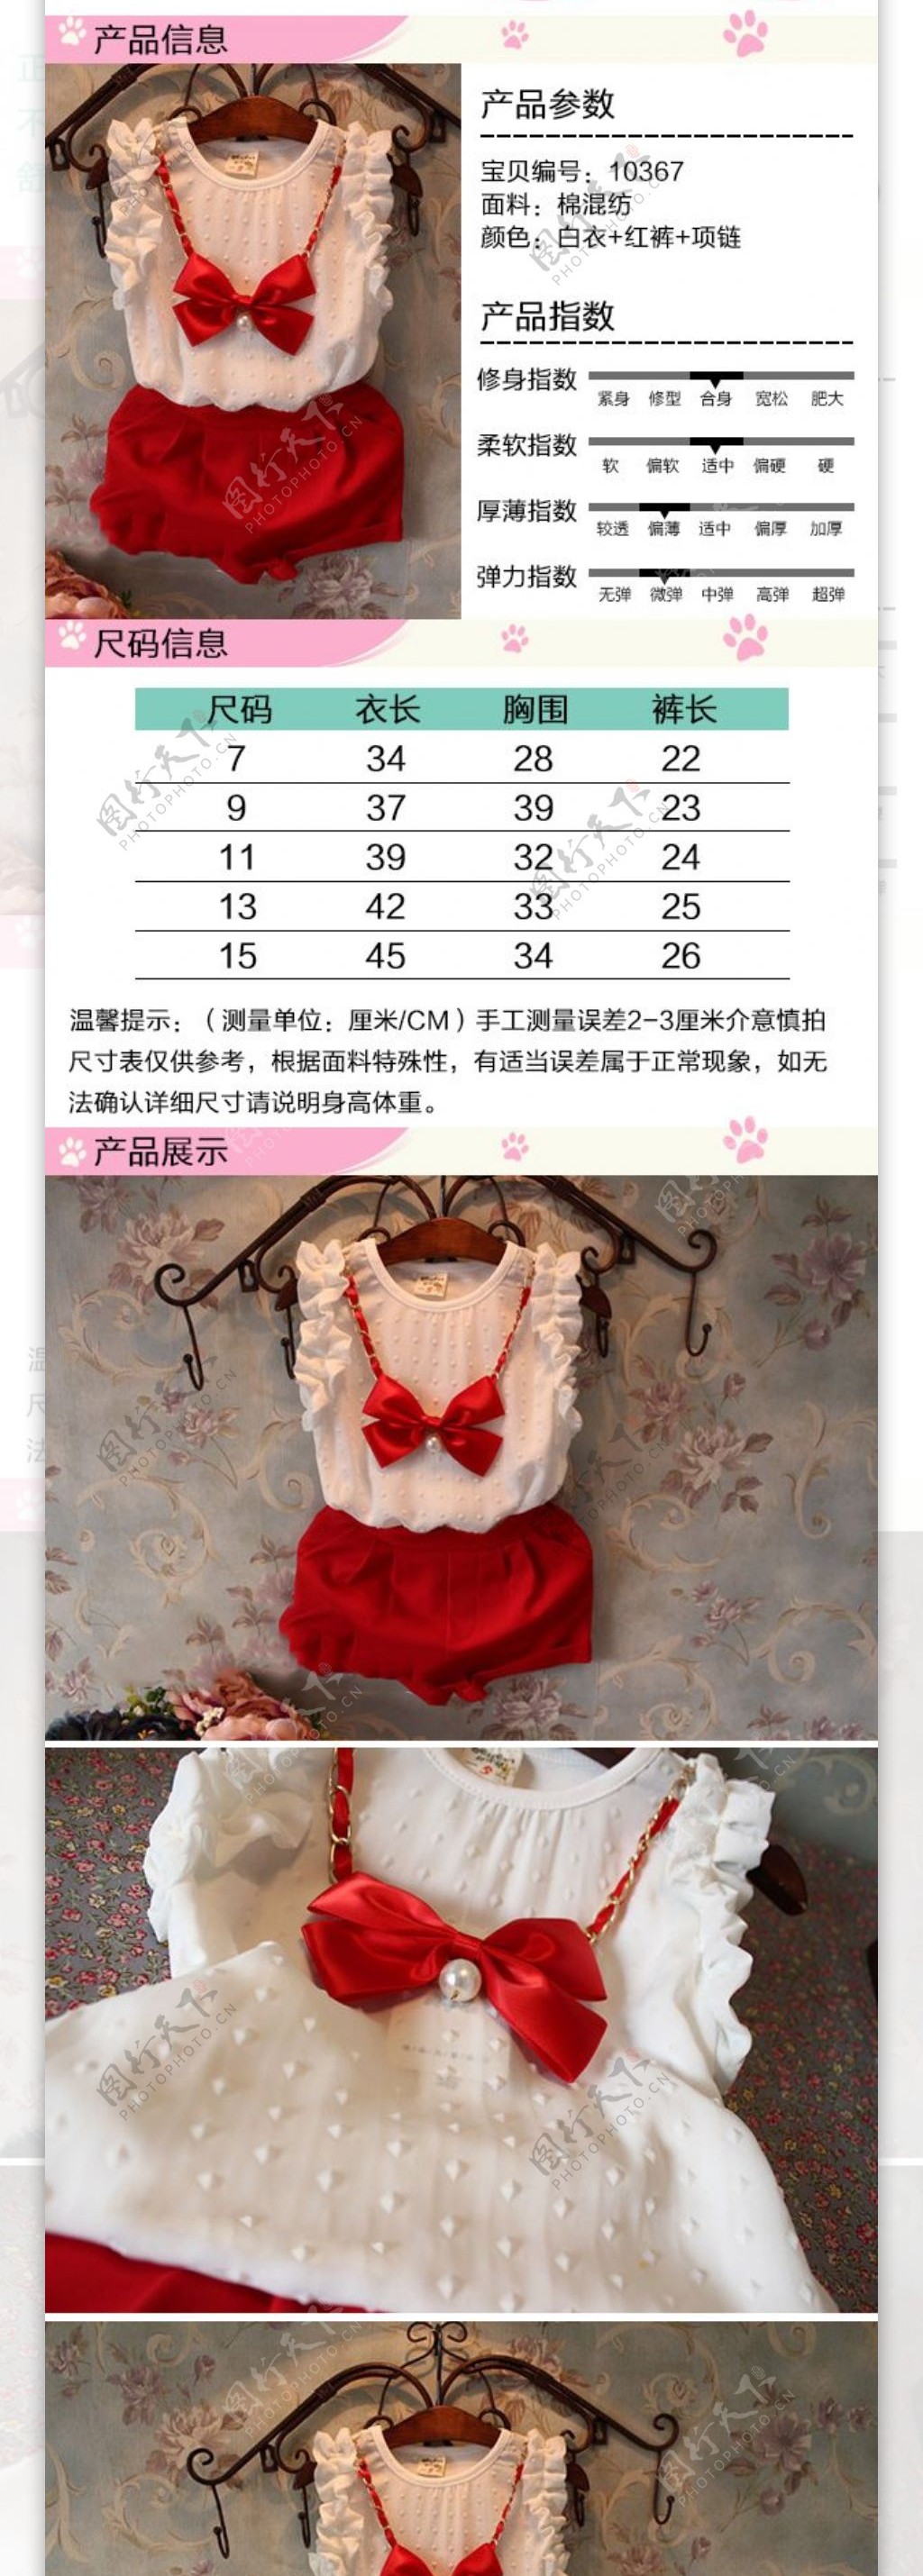 韩版甜美女童装详情页设计